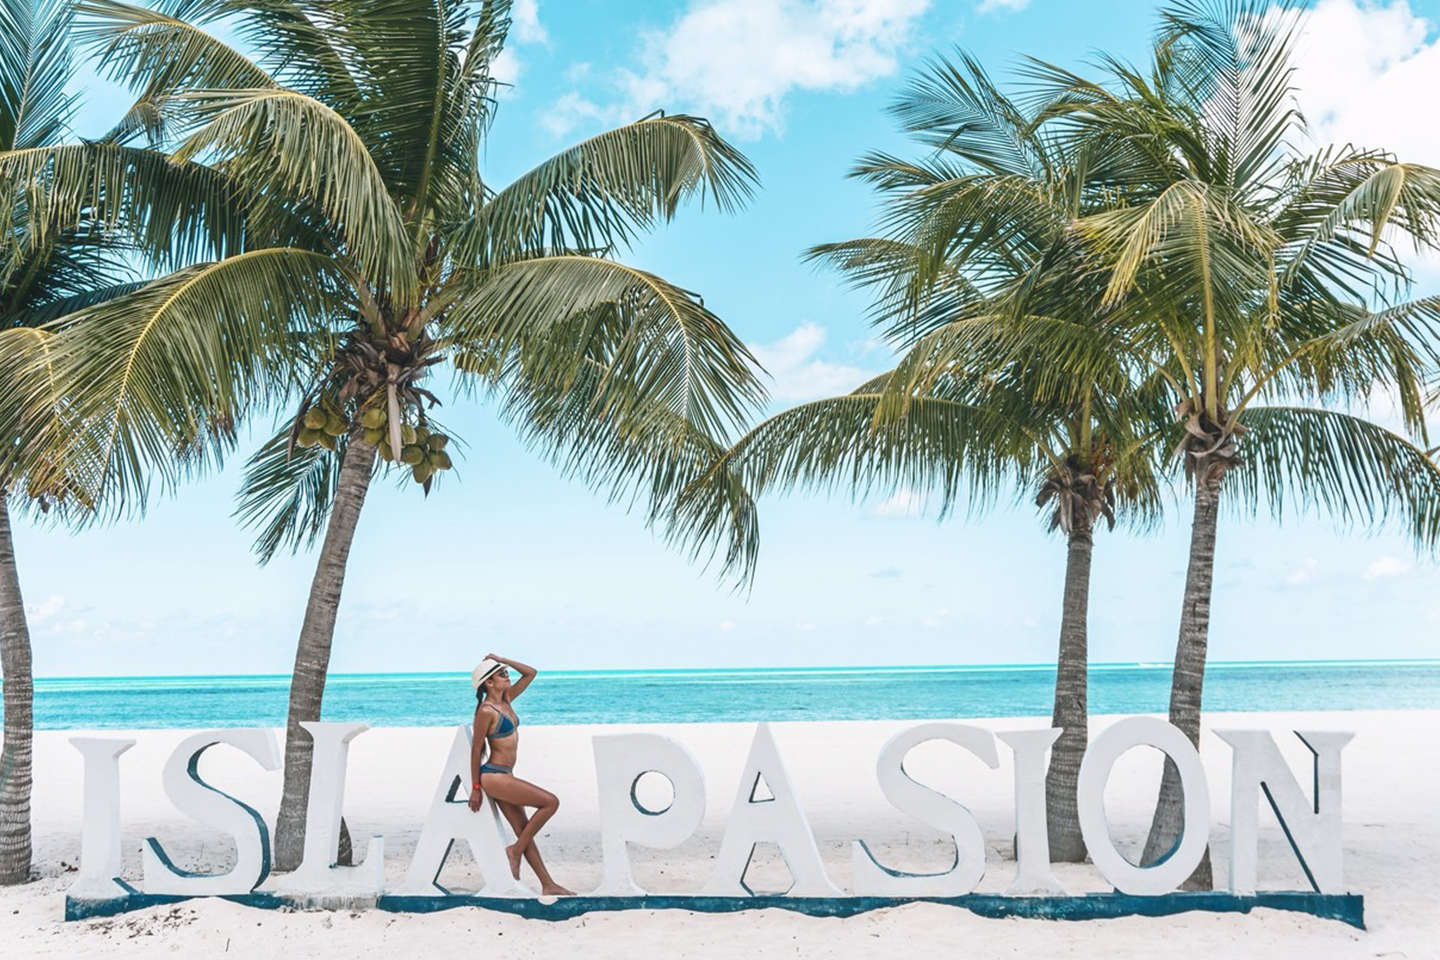 Isla De La Pasión, enamórate en el lugar más romántico del Caribe